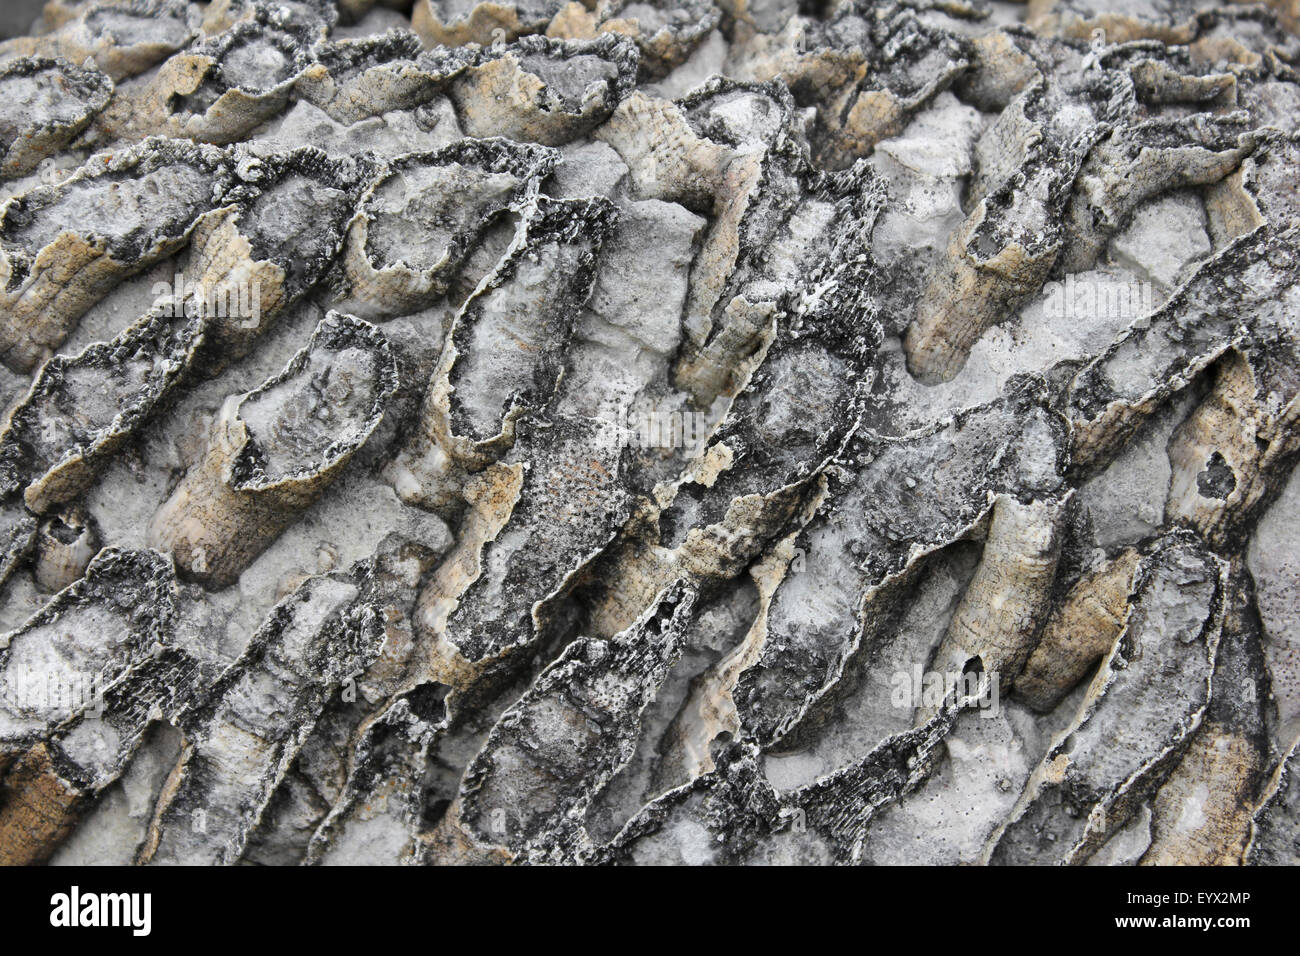 Corail fossilisé coloniale rugueux Lithostrotion junceum Banque D'Images